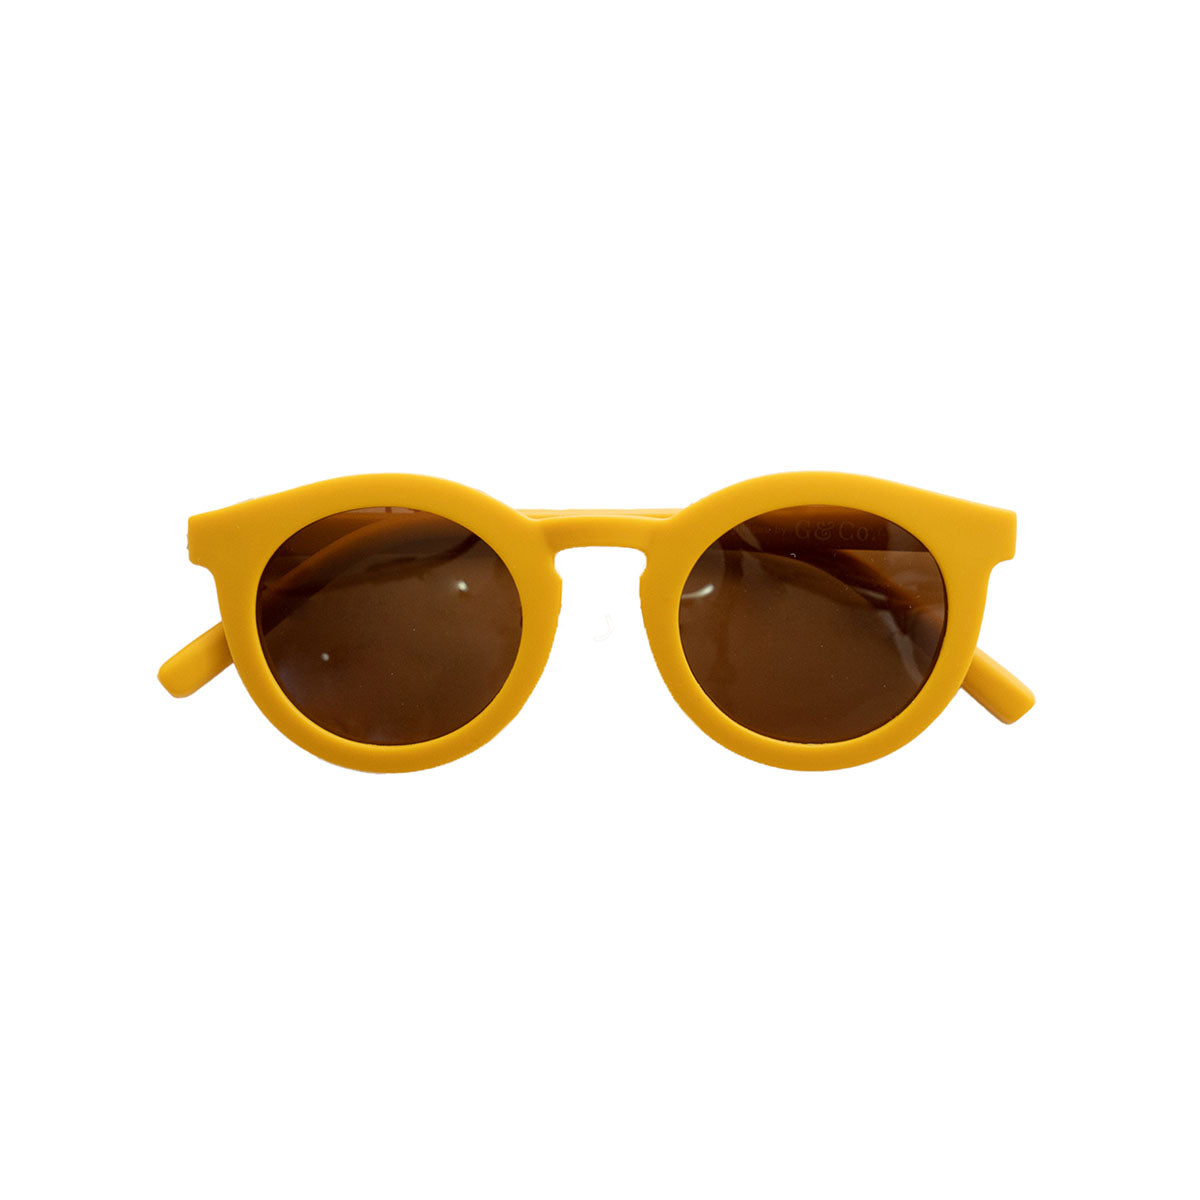 De Grech & co. zonnebril classic adult in de kleur golden is de perfecte keuze voor trendy en modebewuste moeders en hun mini-me’s. De zonnebril is namelijk ook beschikbaar voor kinderen! VanZus